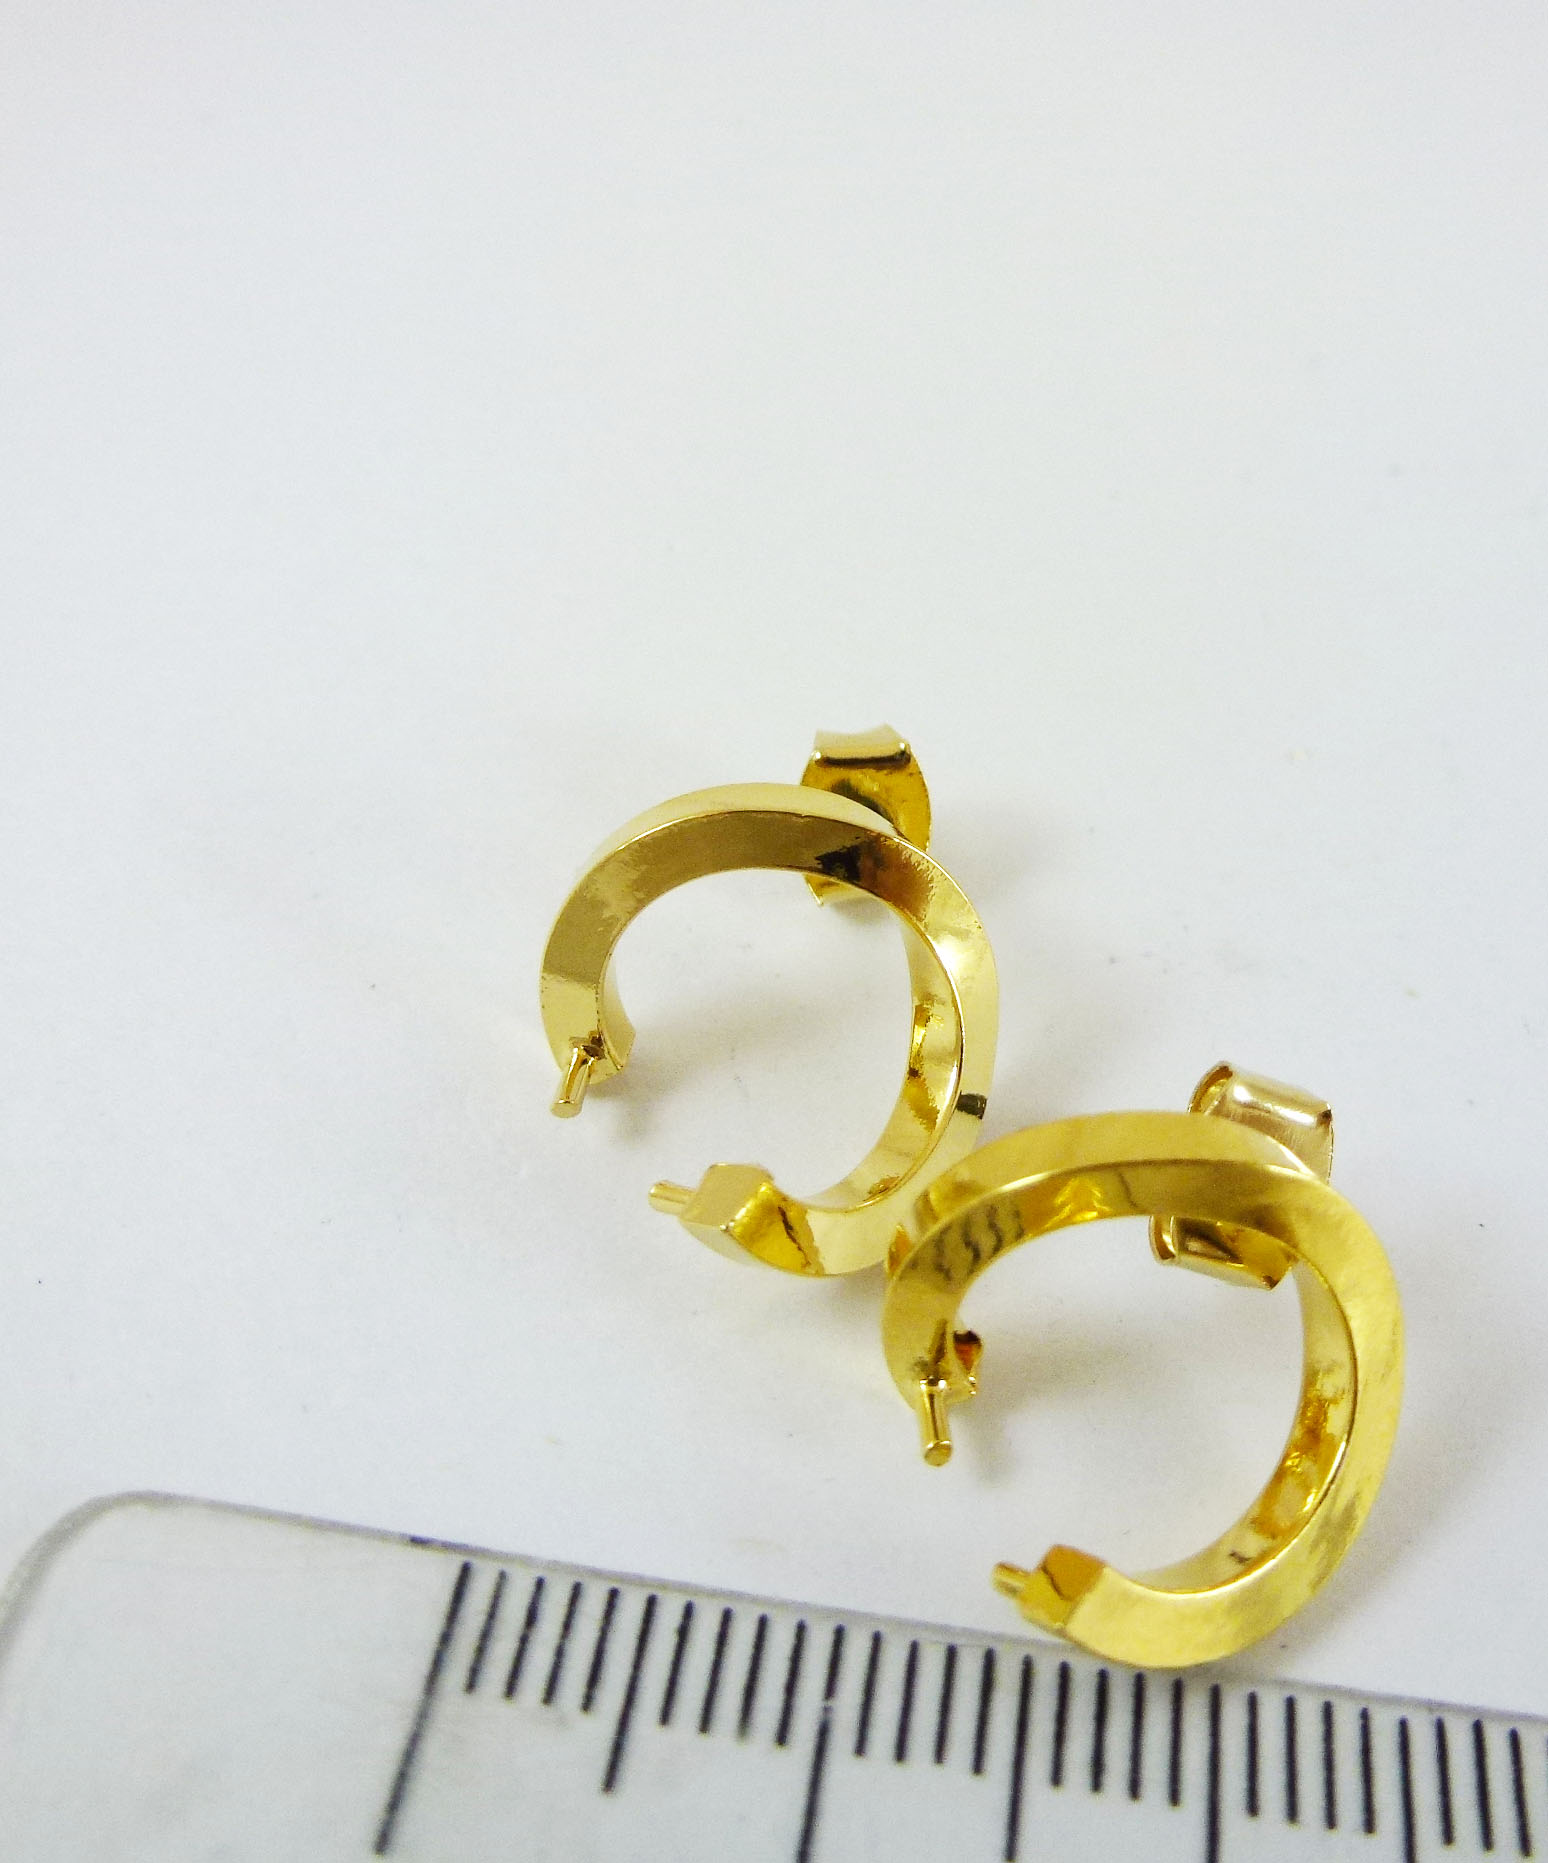 14mm銅鍍金色圓弧形不銹鋼耳針